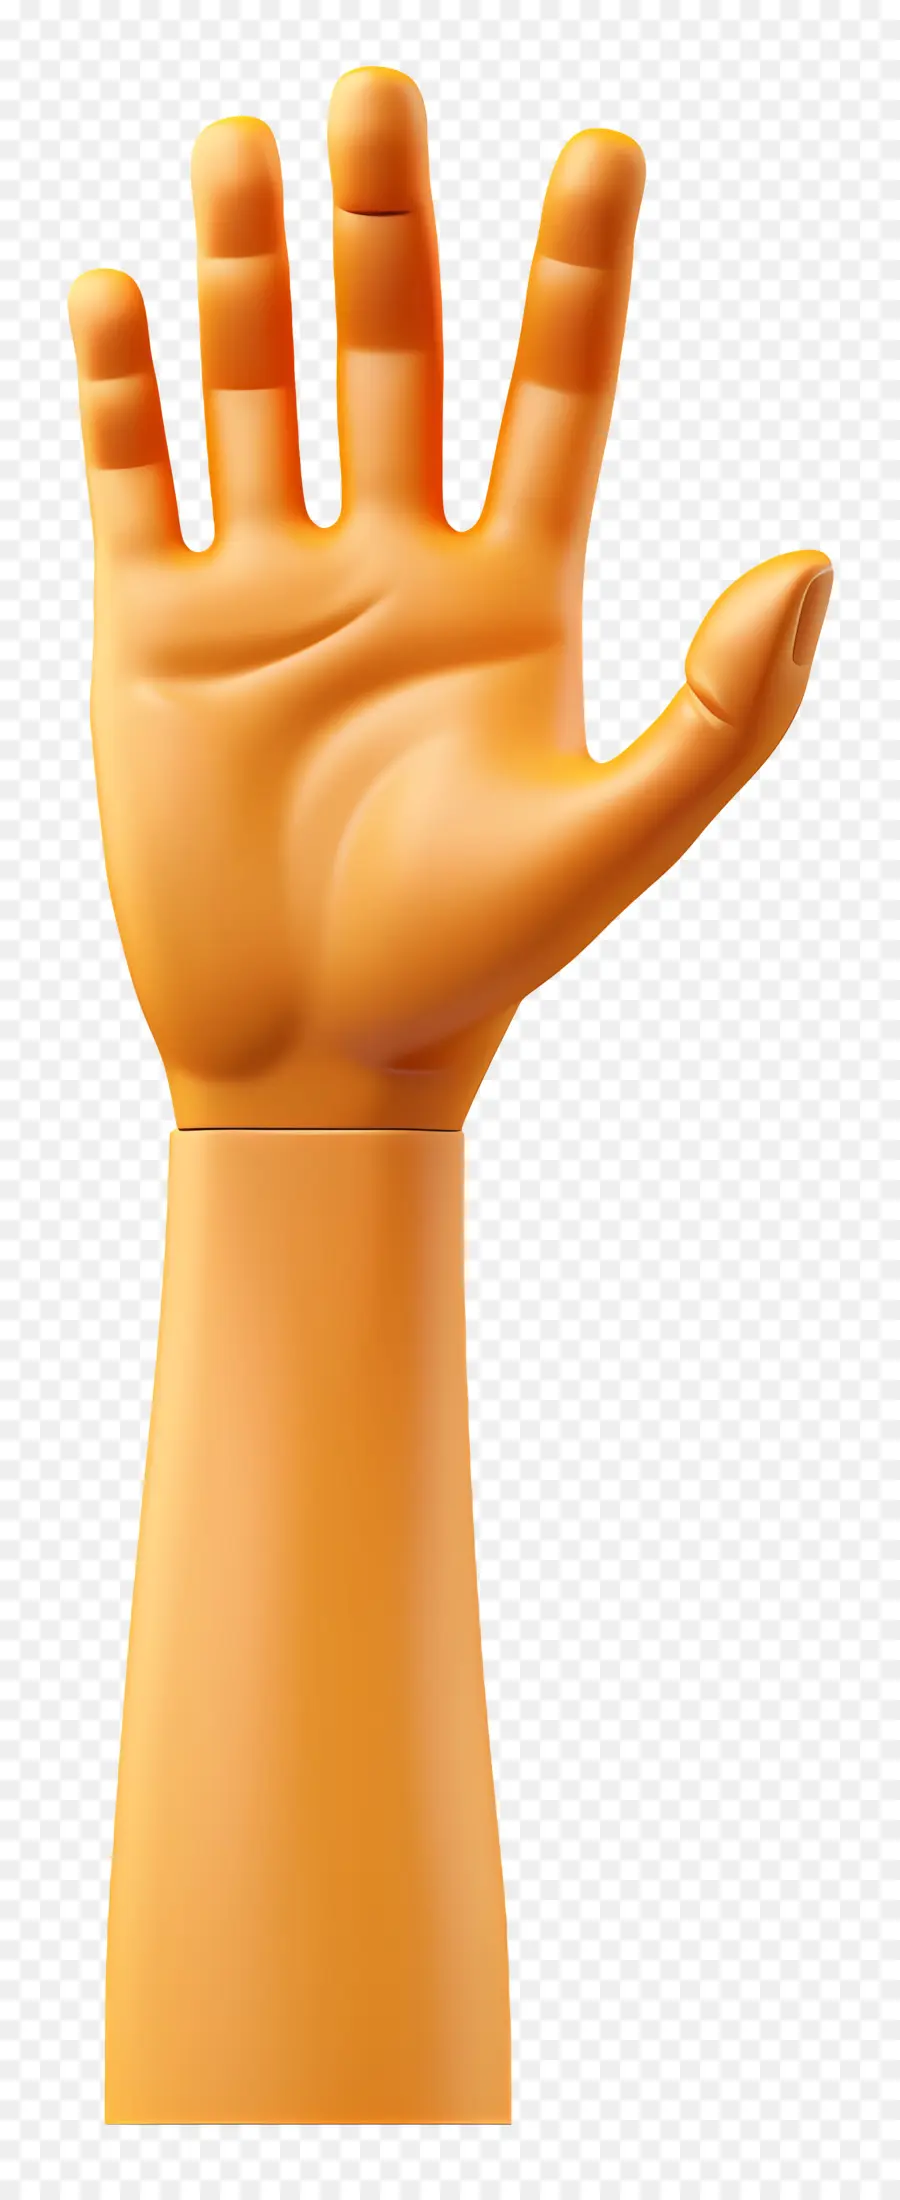 Orange - Orange Hand mit erhöhten Fingern auf schwarzem Hintergrund